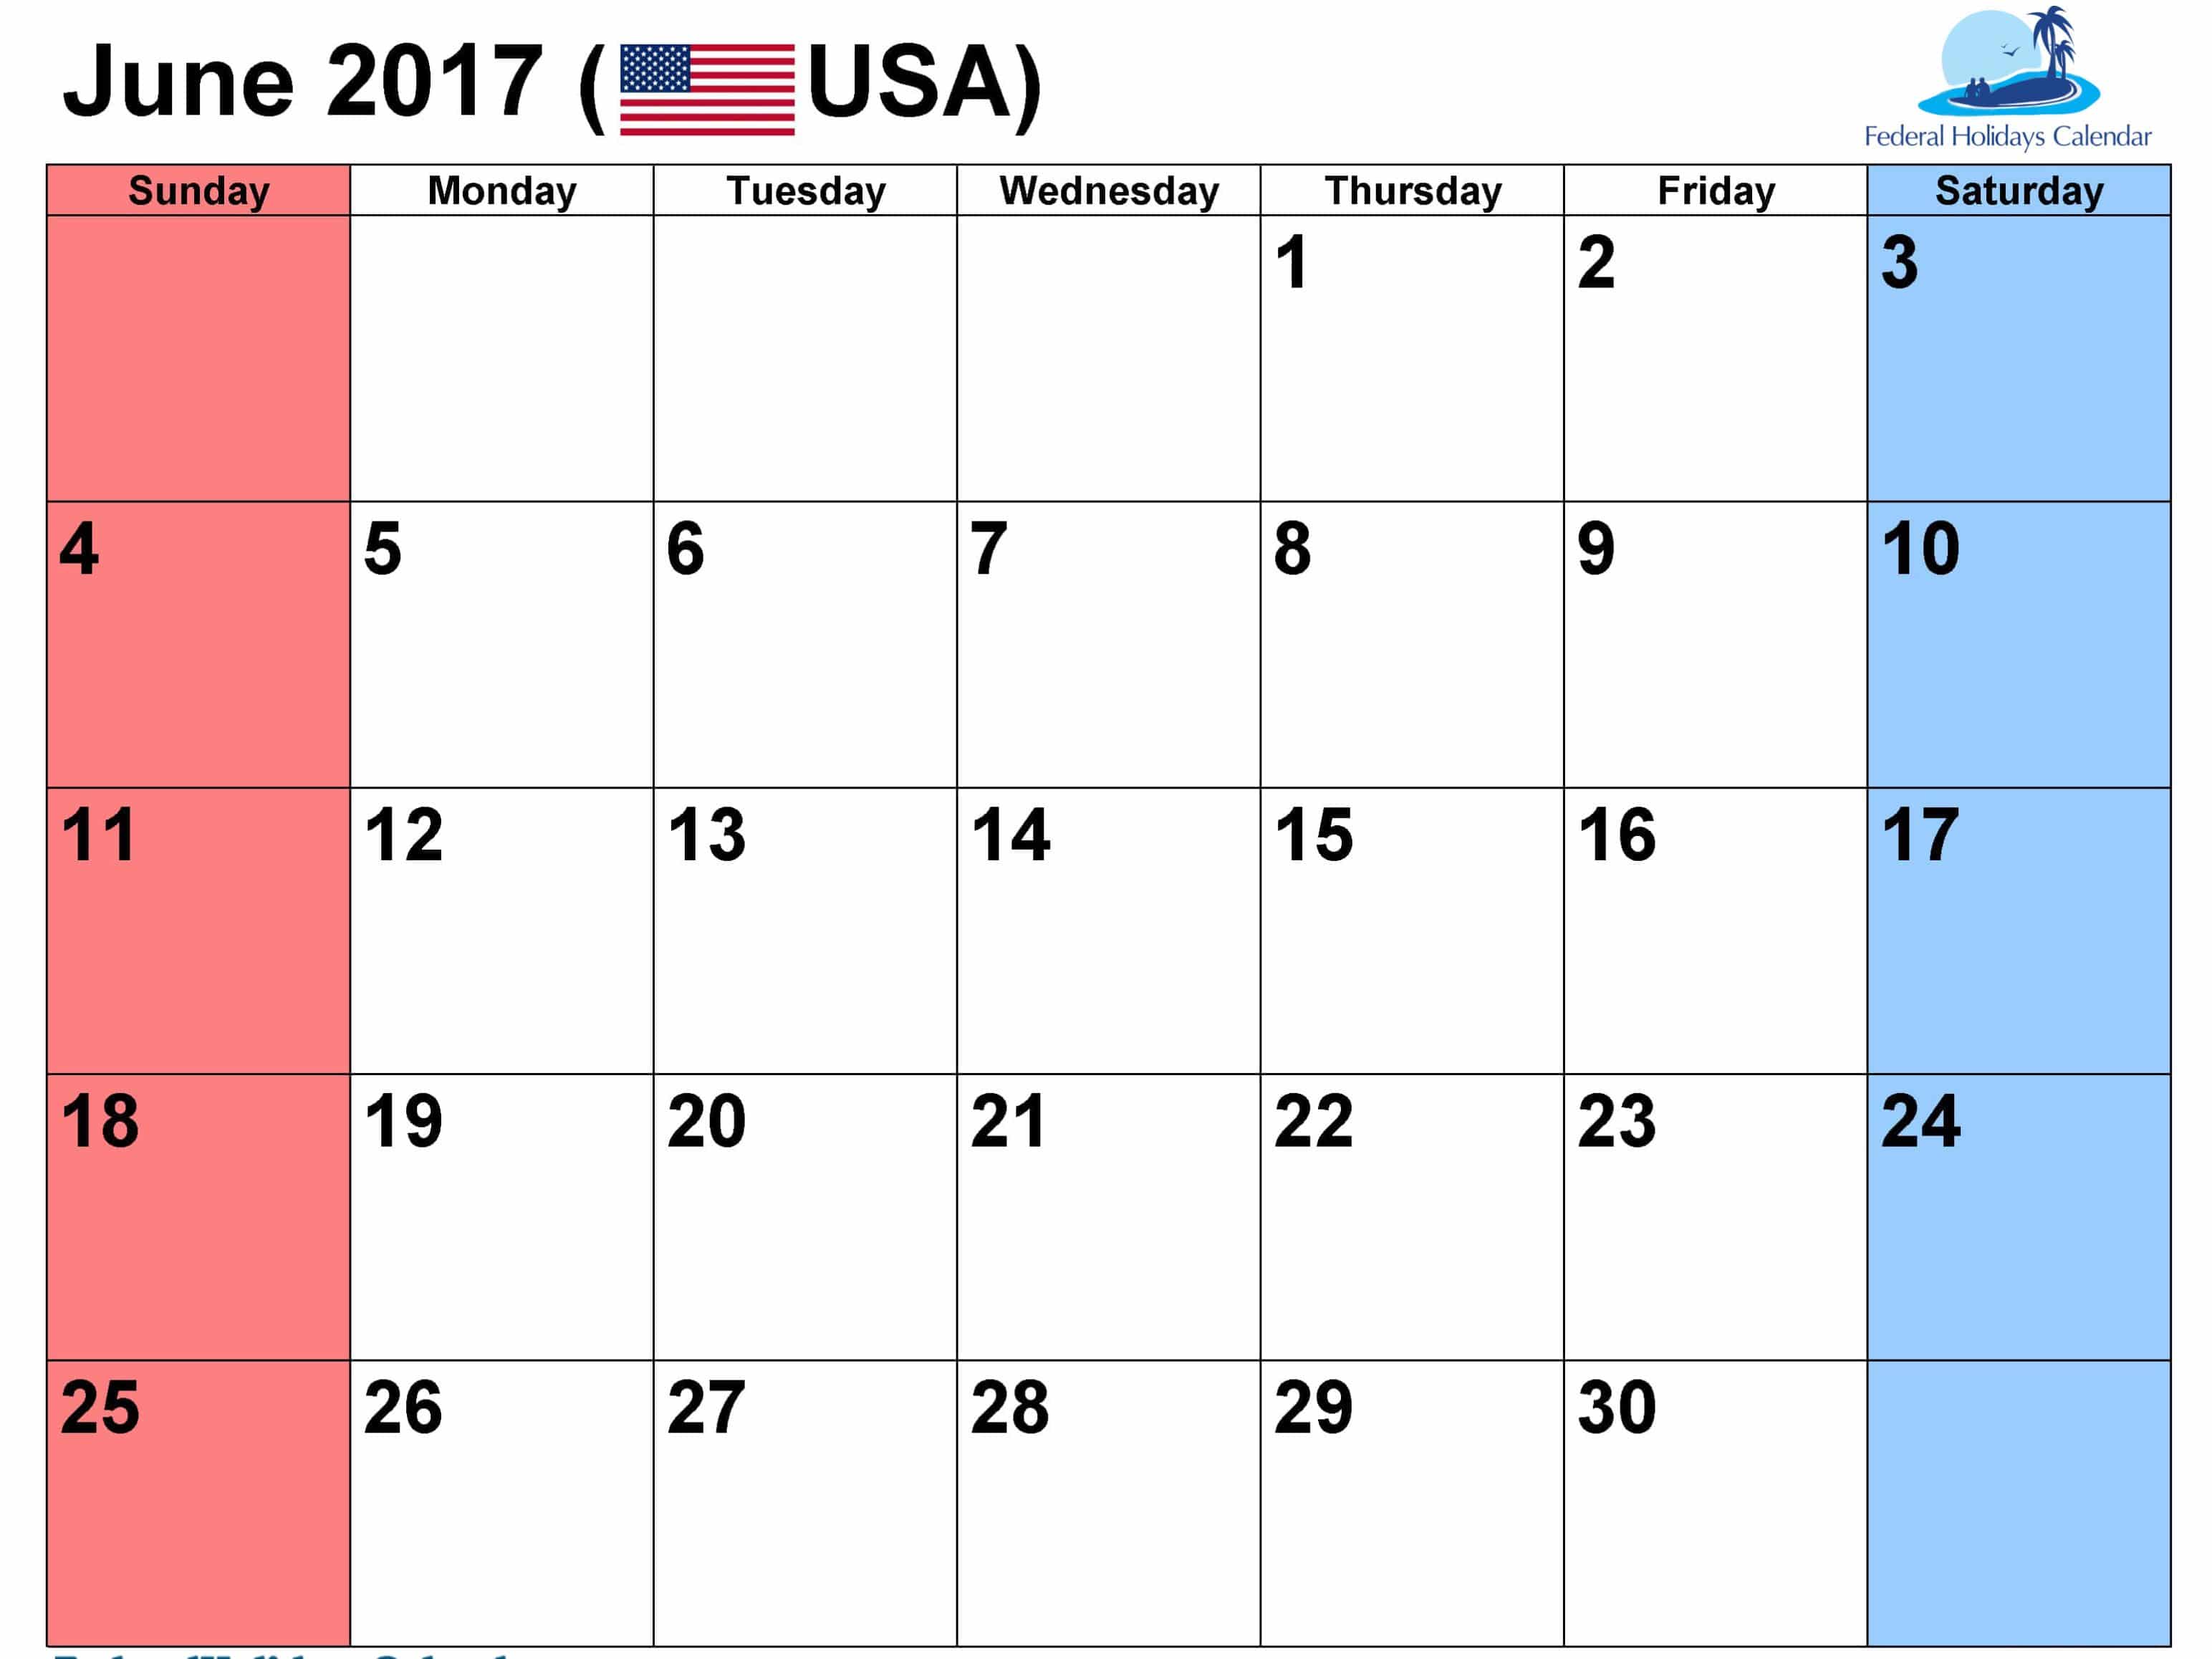 June 2017 calendar USA